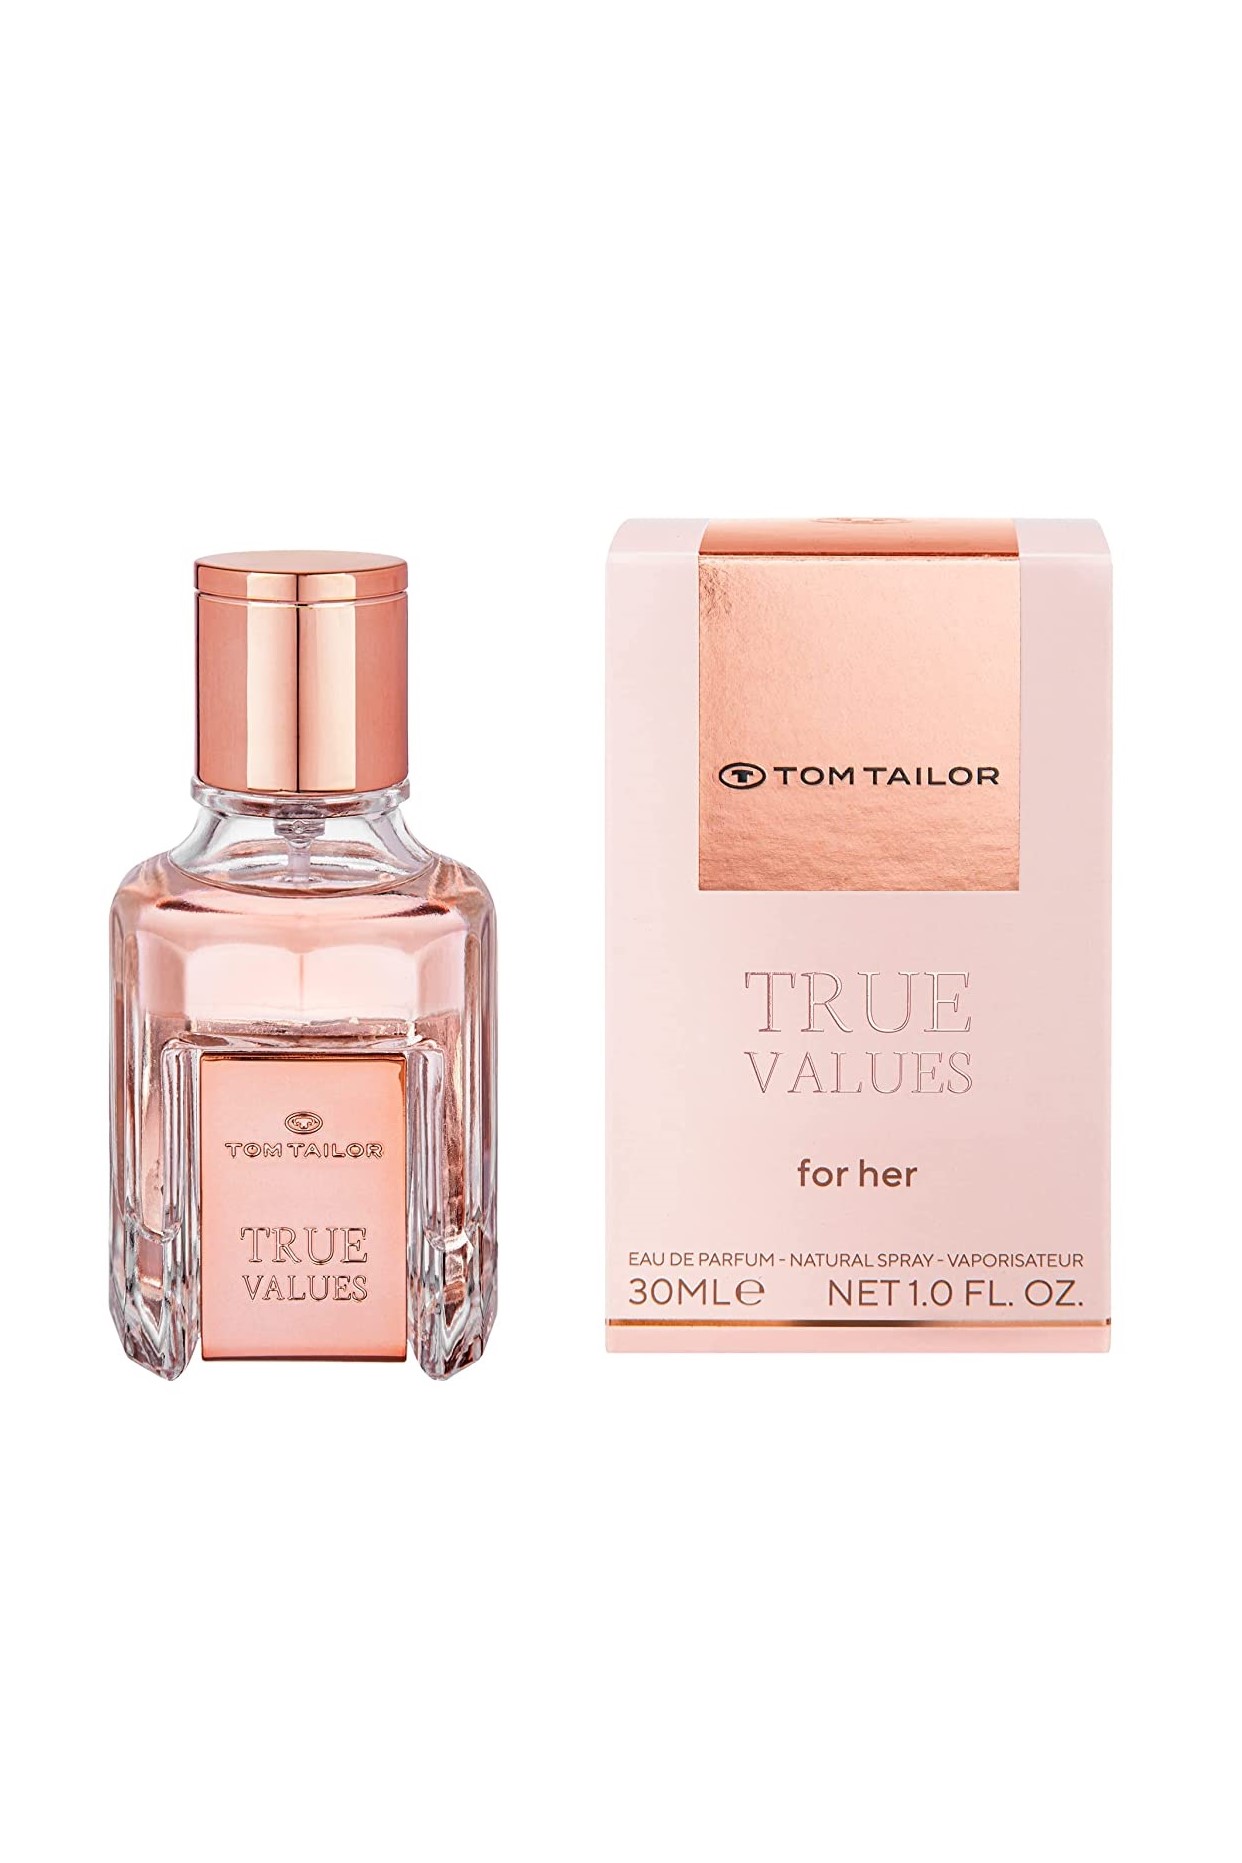 Tom Tailor True Values For Her 30 ml EDP